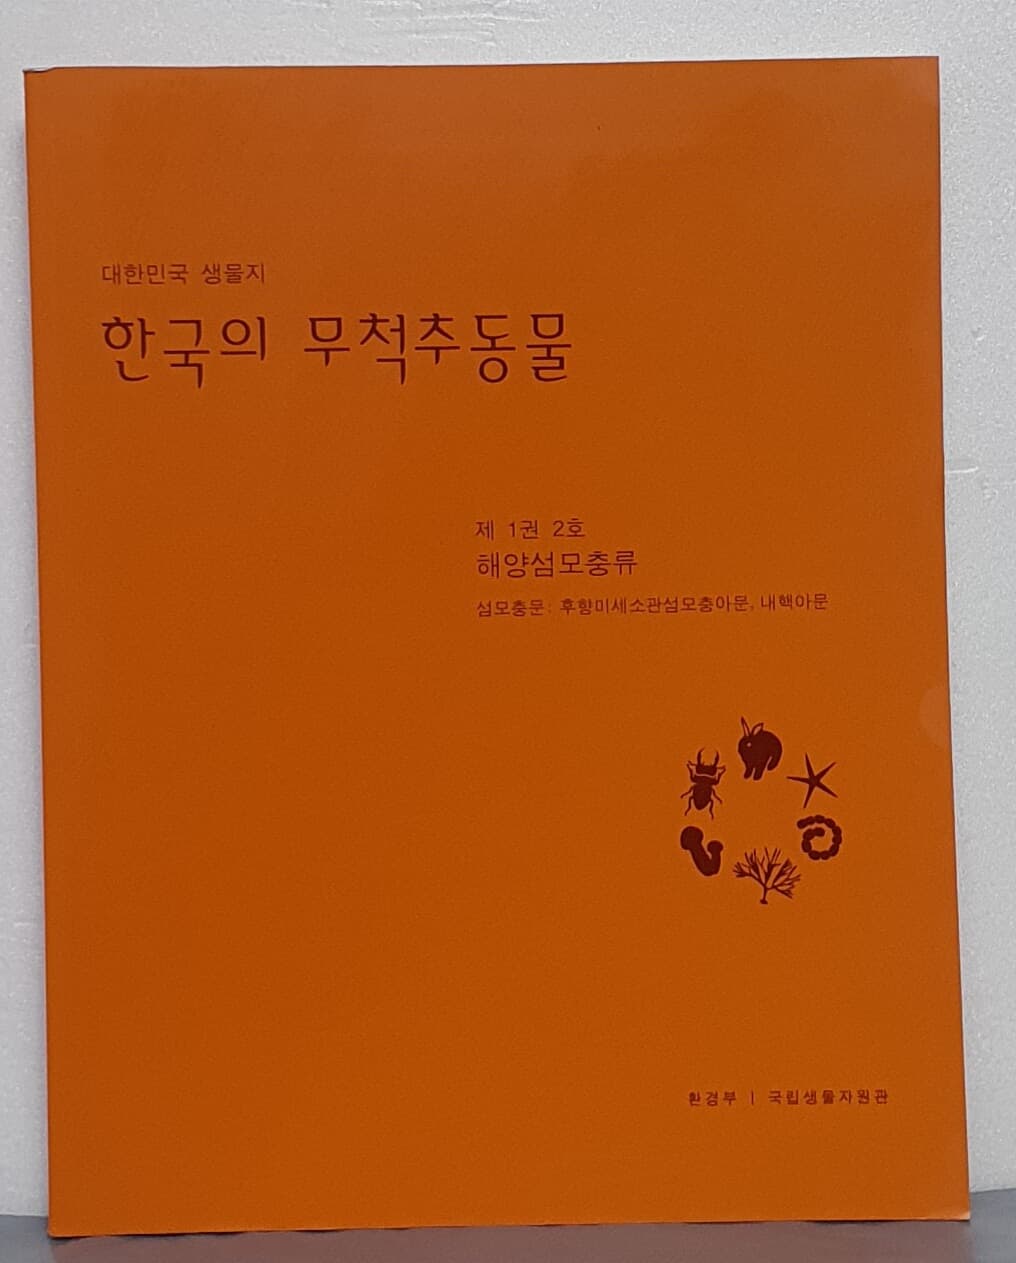 한국의 무척추동물 - 제1권 2호 해양섬모충류